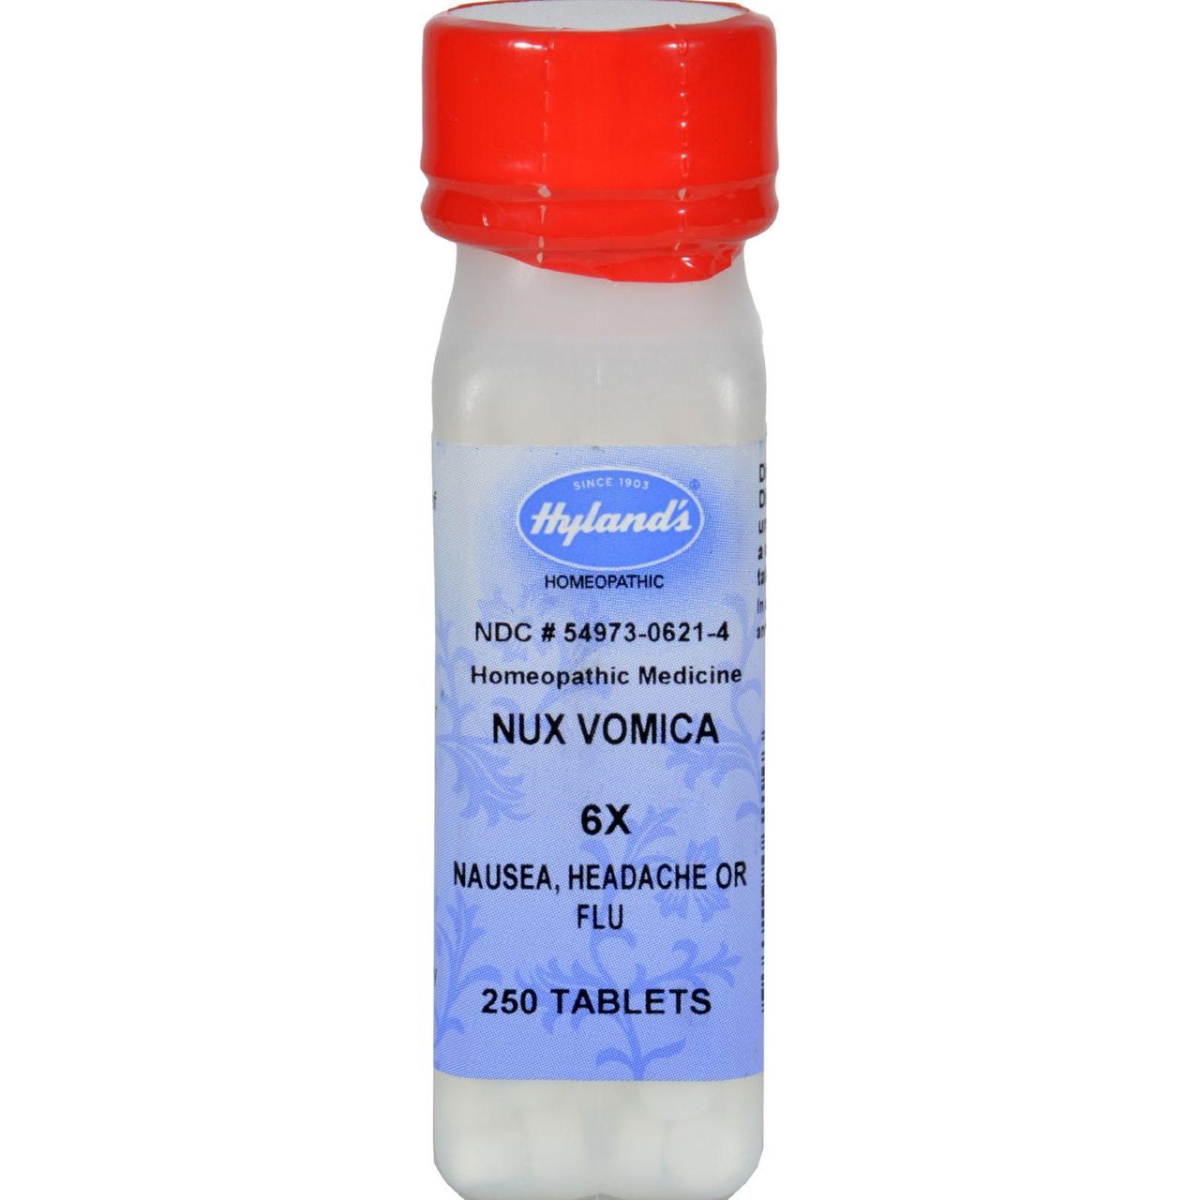 Hg0778829 Nux Vomica 6x - 250 Tablets